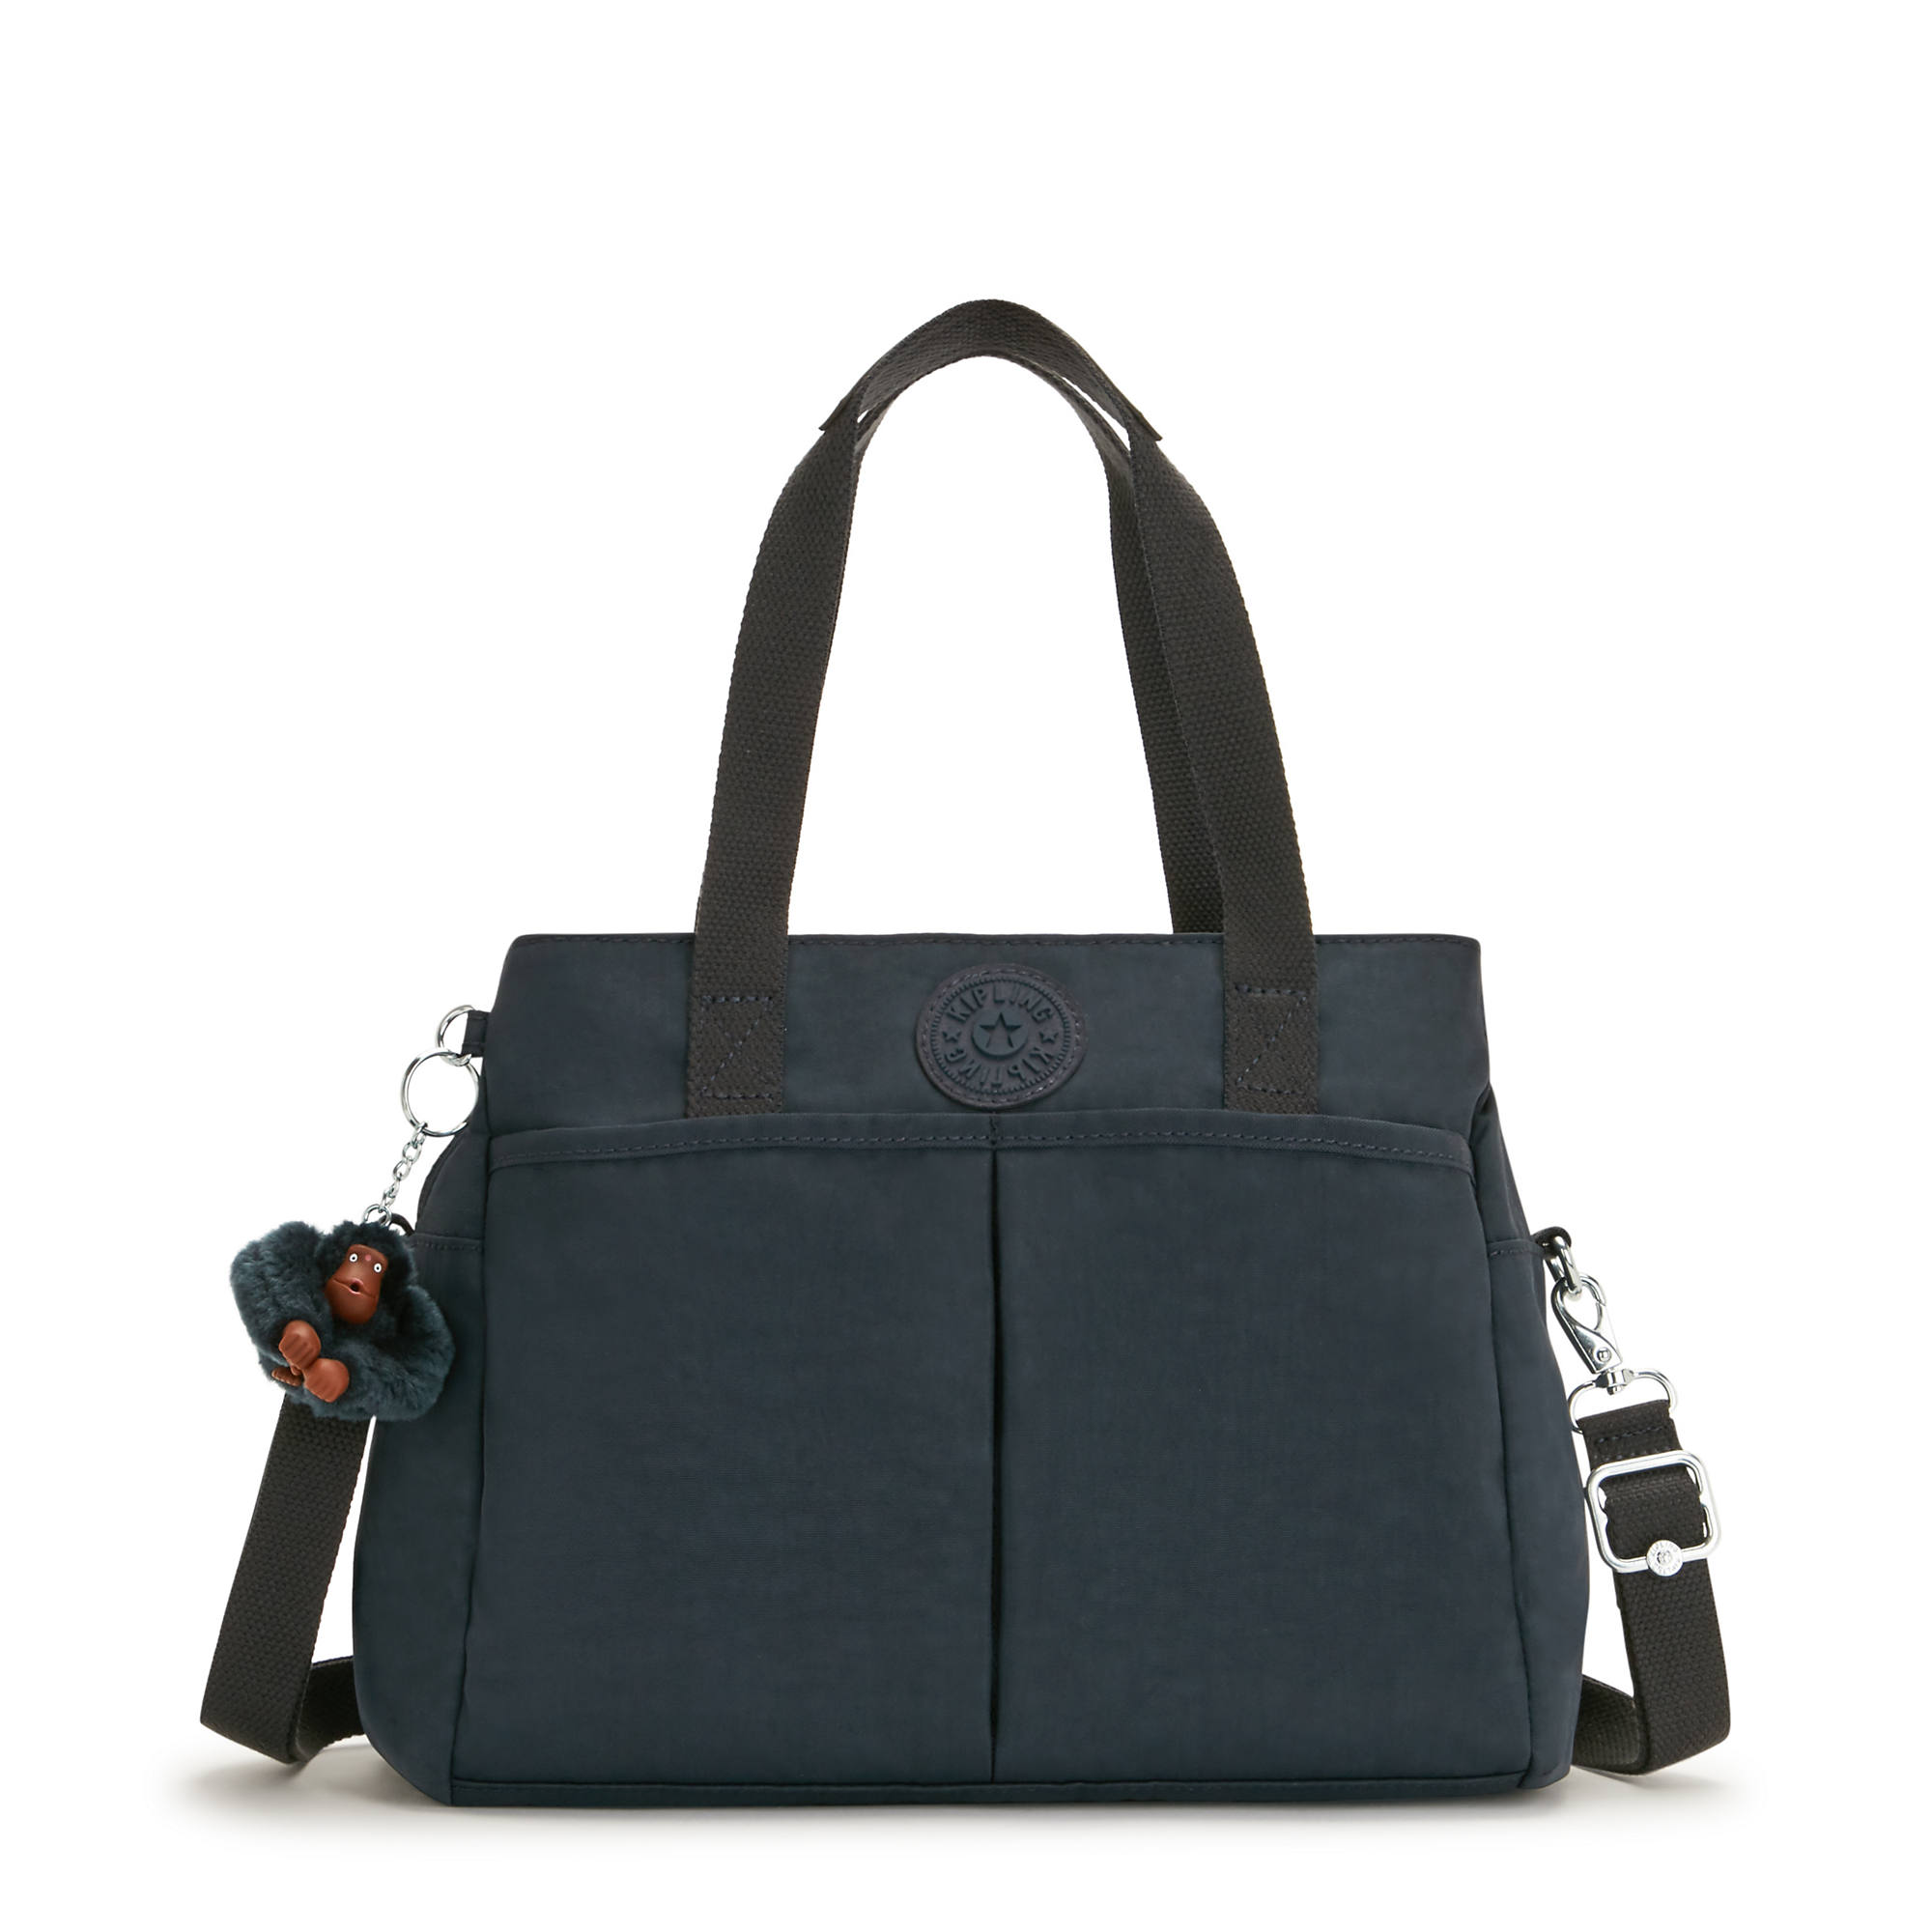 Sale| Kipling | Kipling bags, Bags, Stylish backpacks